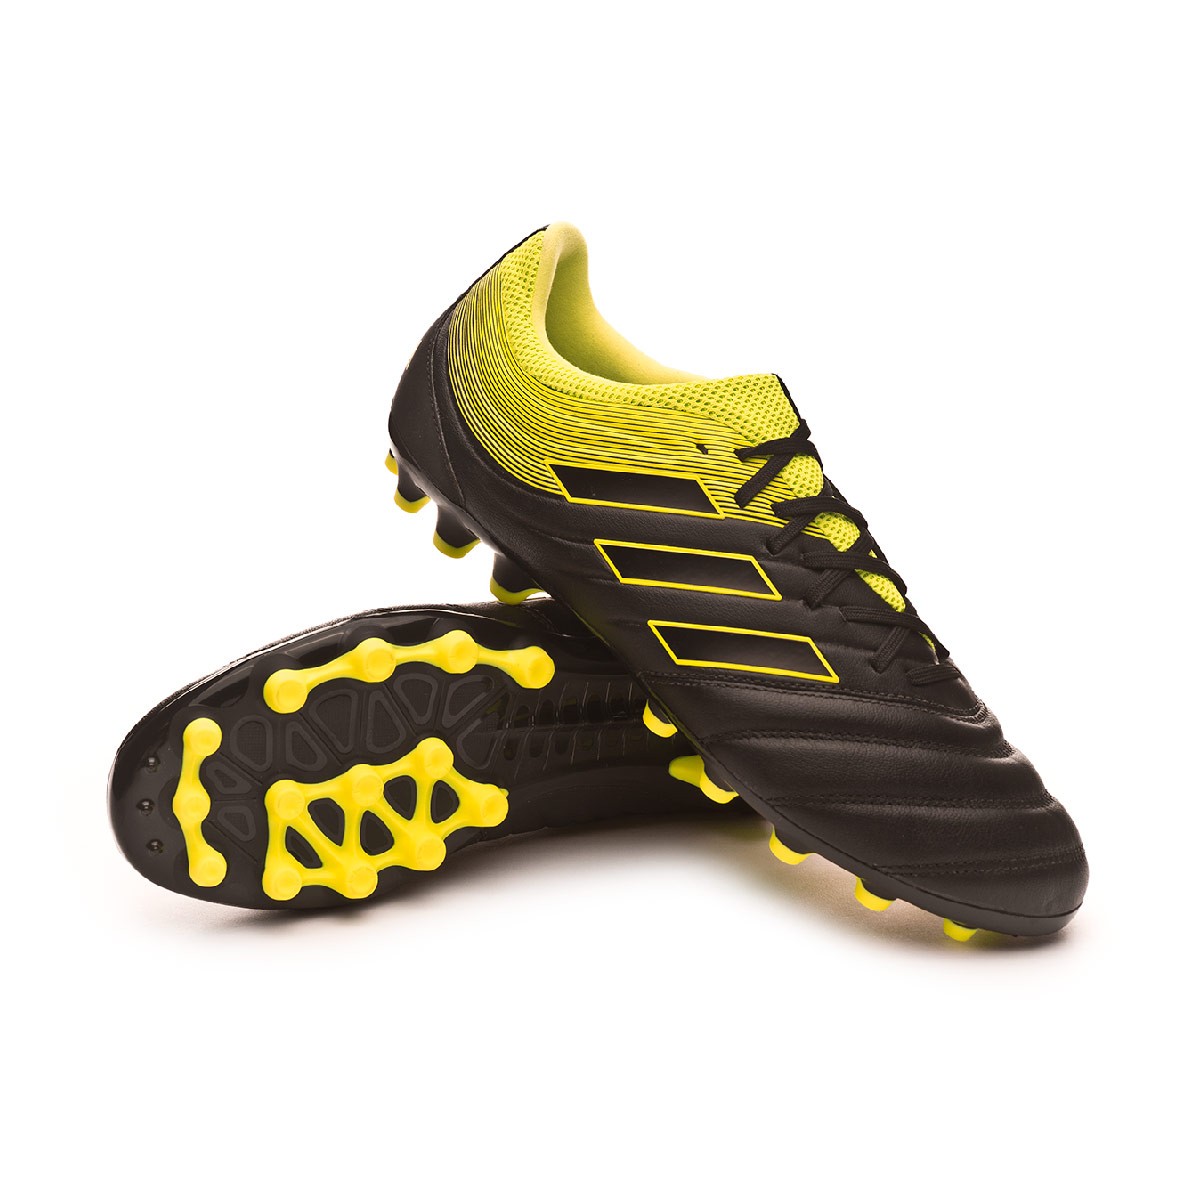 Zapatos de fútbol adidas Copa 19.3 AG Core black-Solar yellow-Core black -  Tienda de fútbol Fútbol Emotion